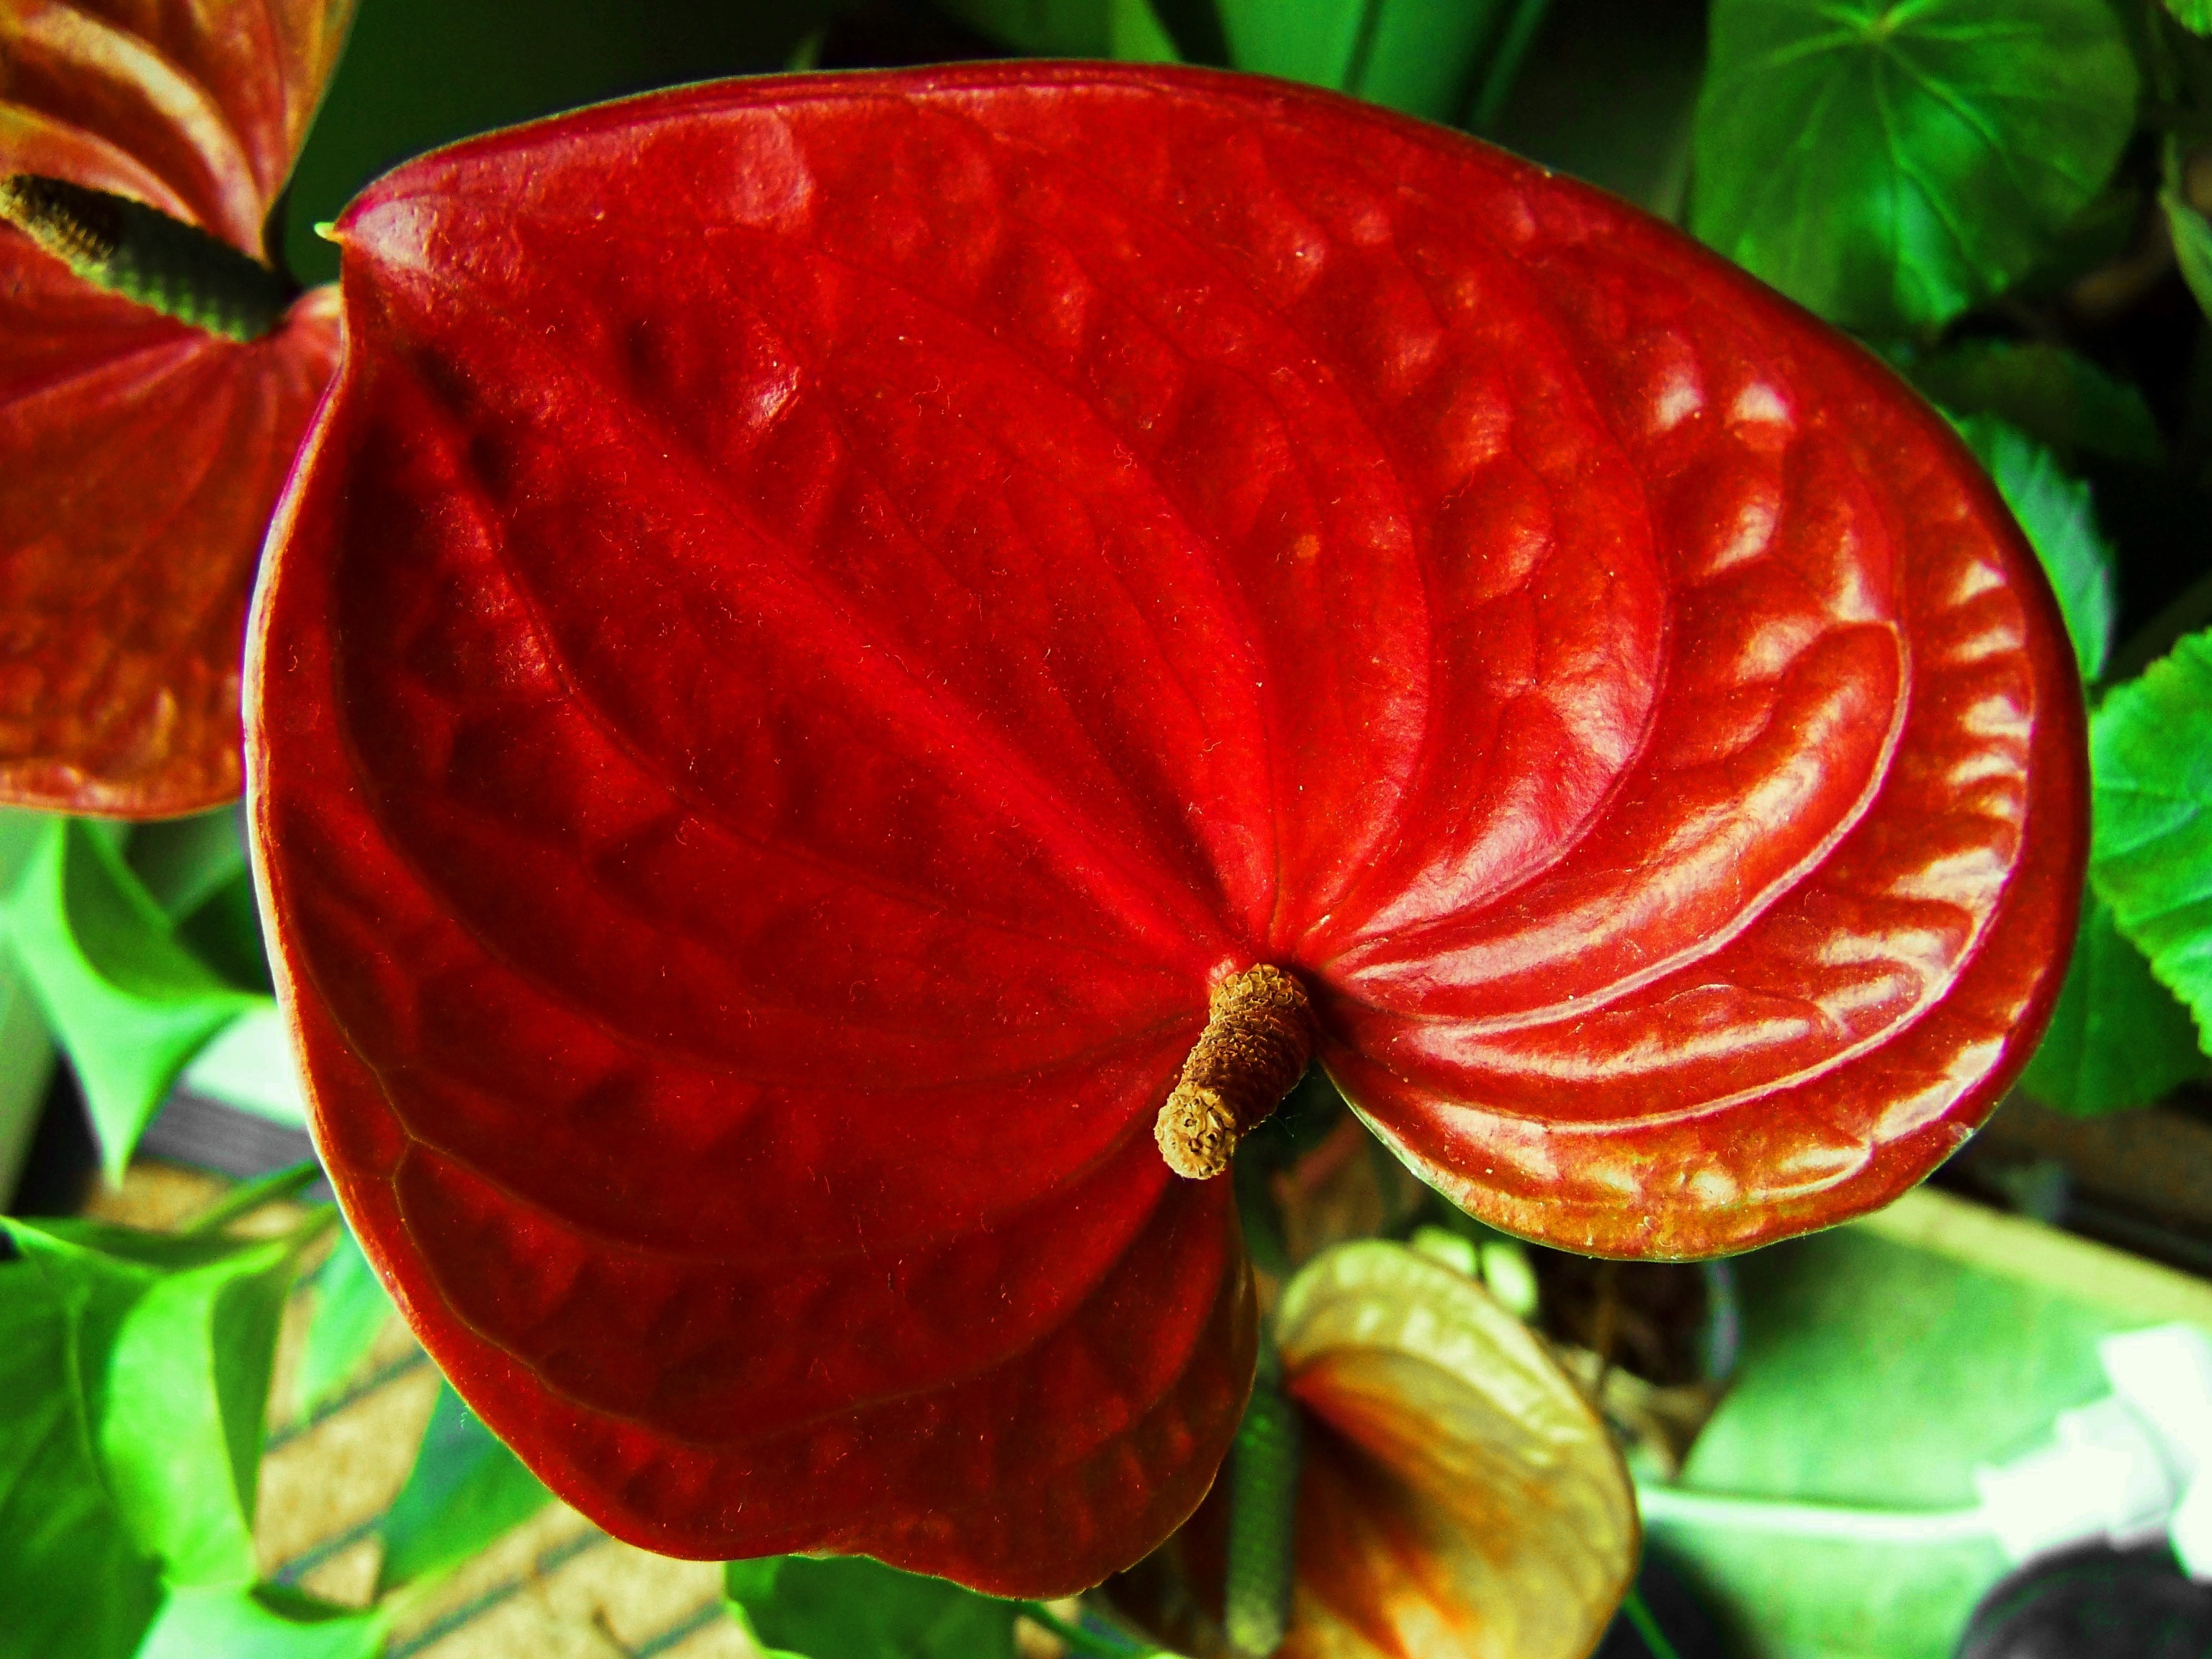 red leaf plant